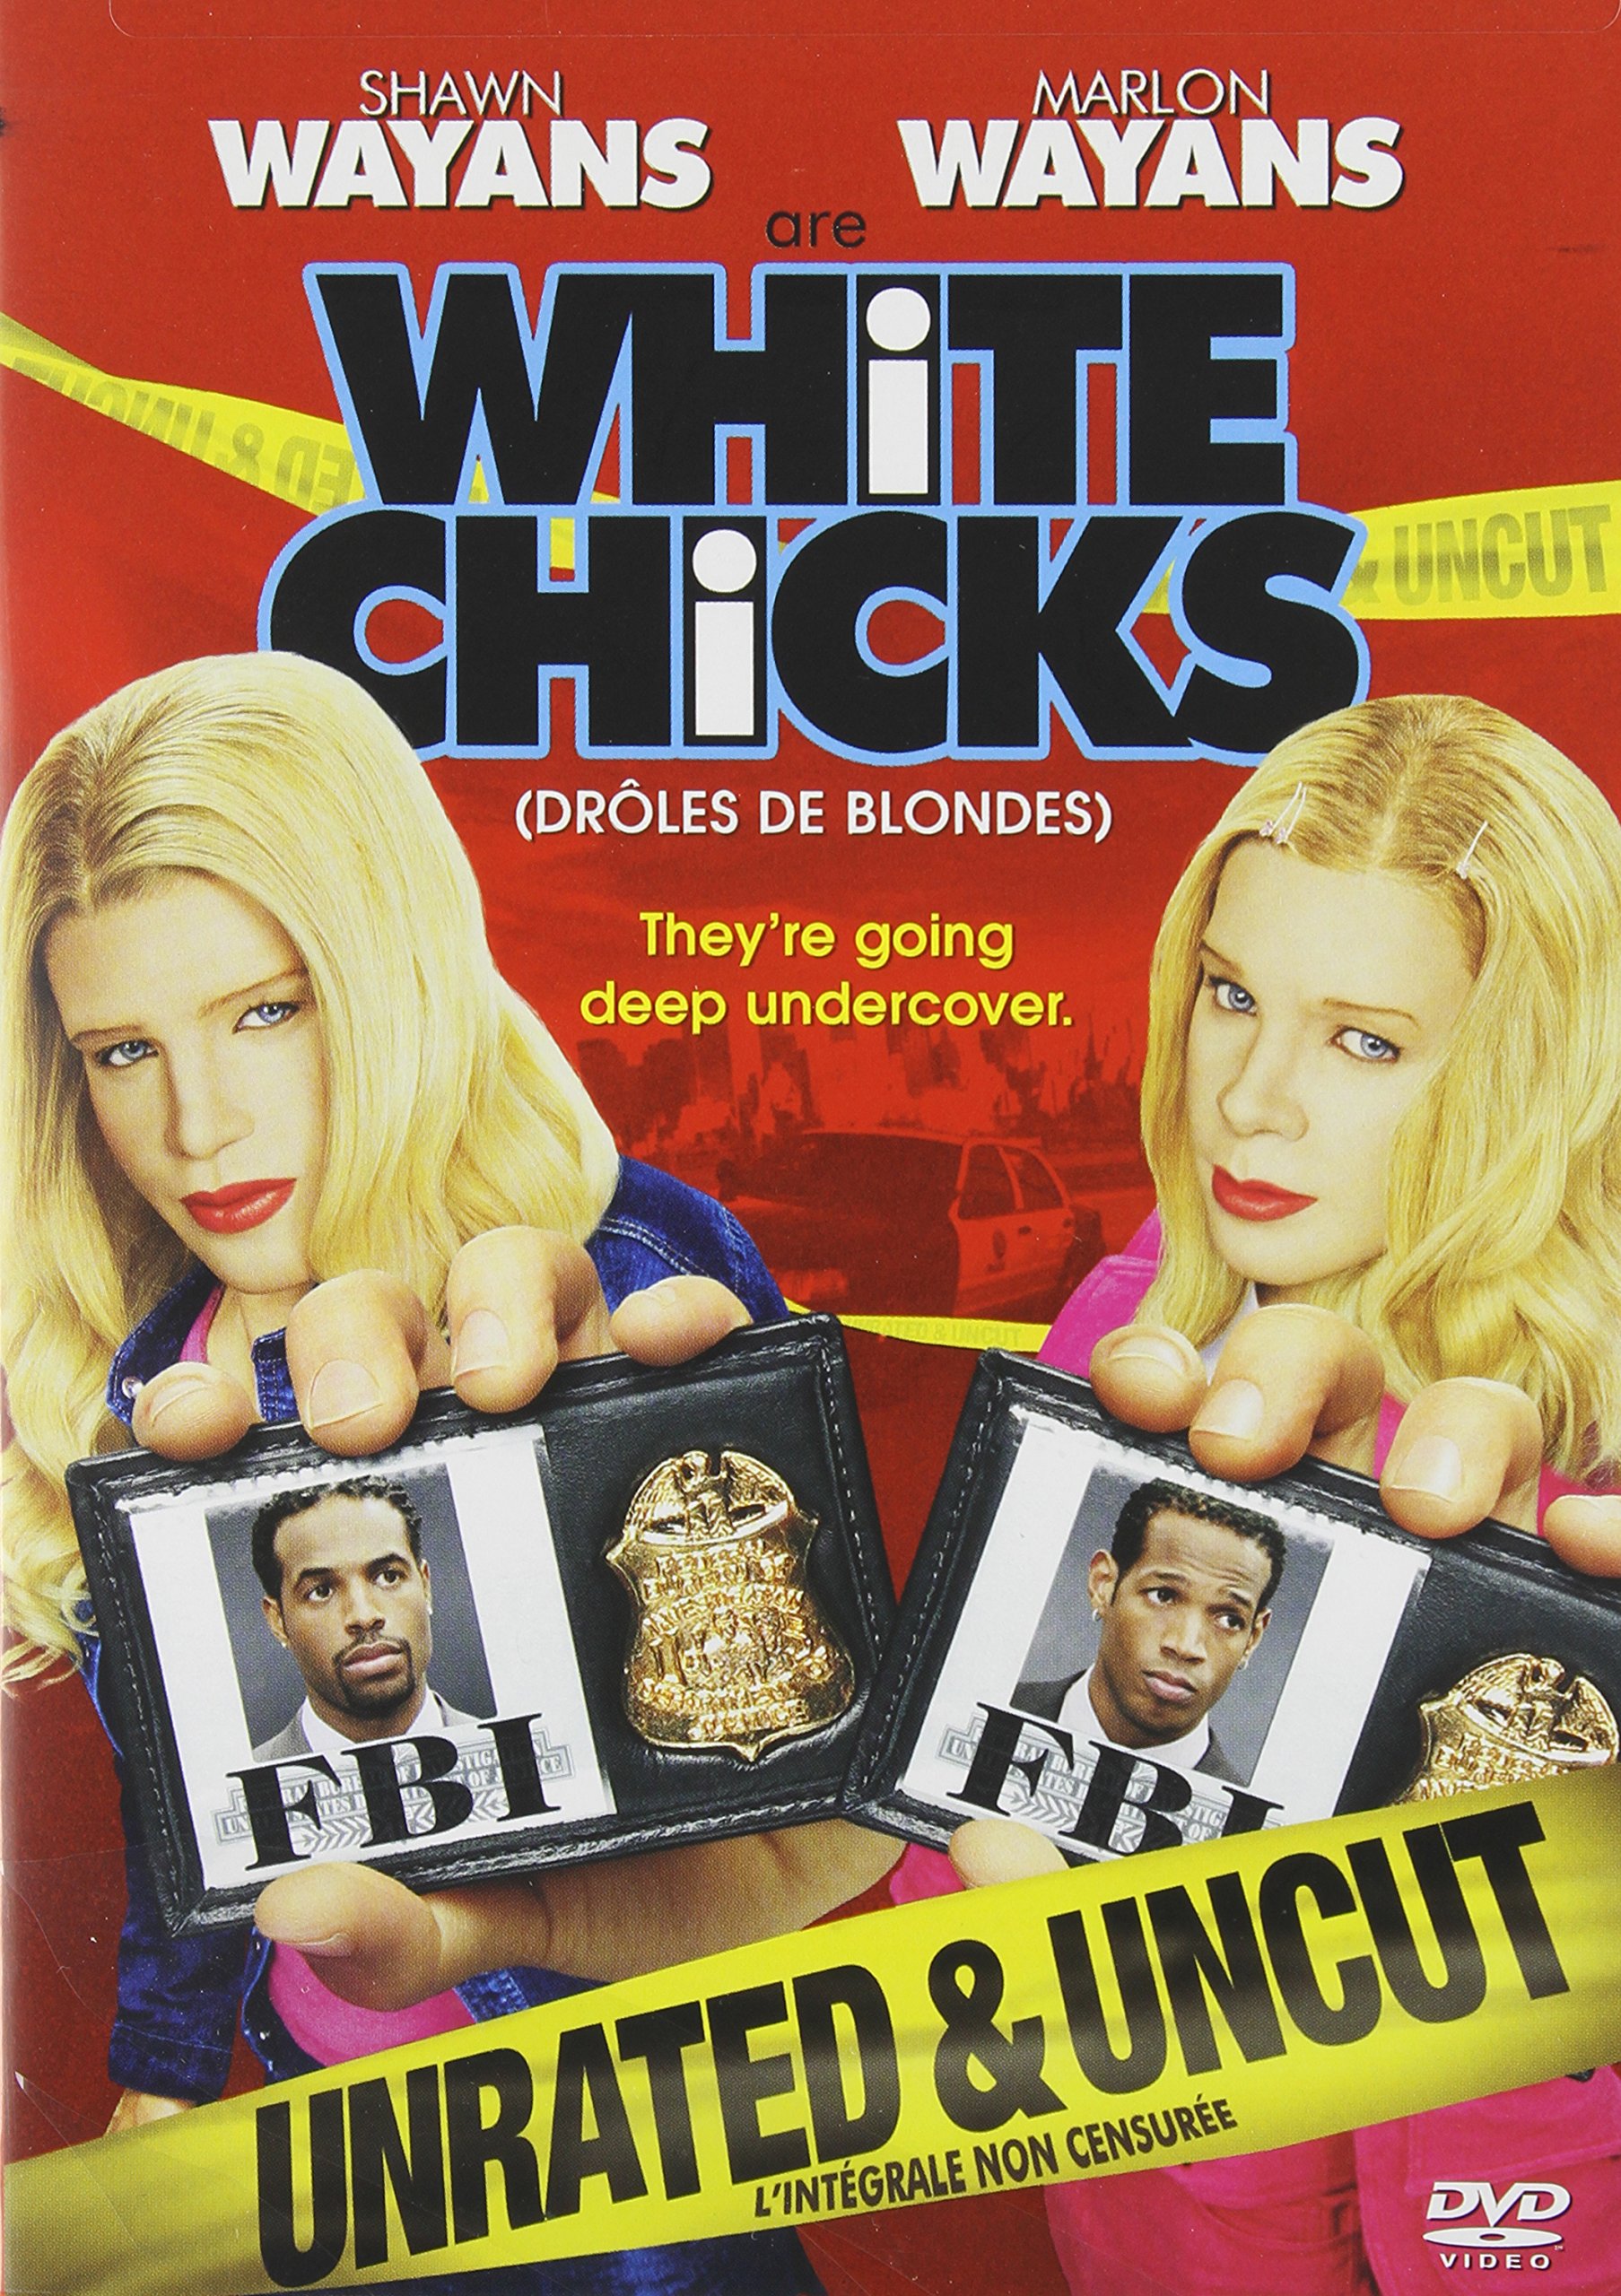 WHITE CHICKS on MovieShack